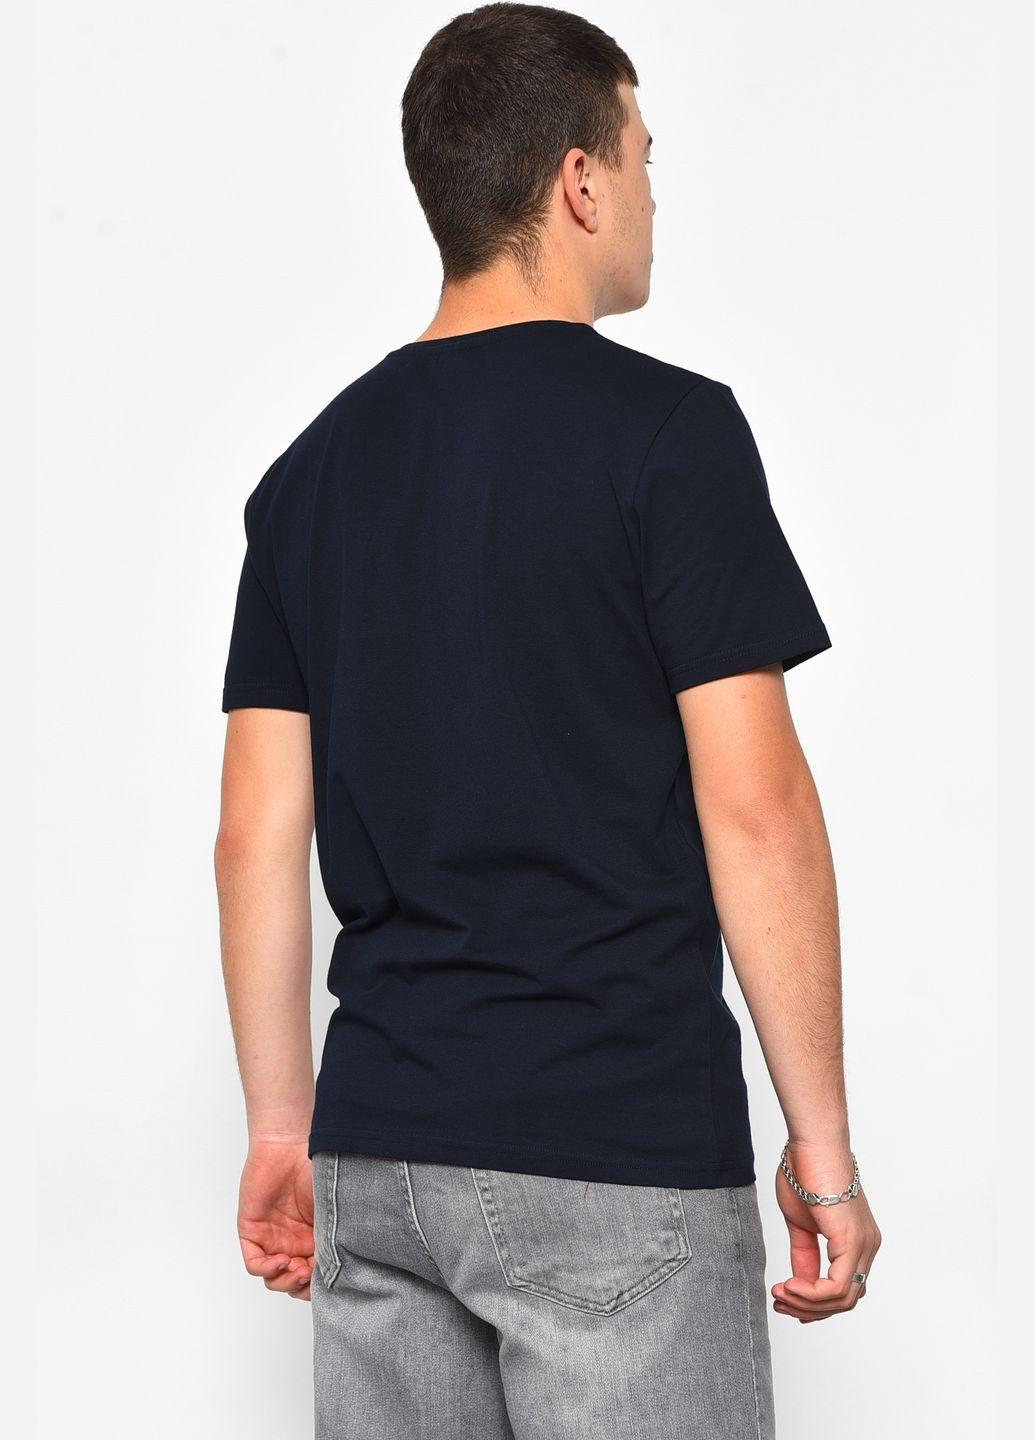 Темно-синяя футболка мужская полубатальная темно-синего цвета Let's Shop